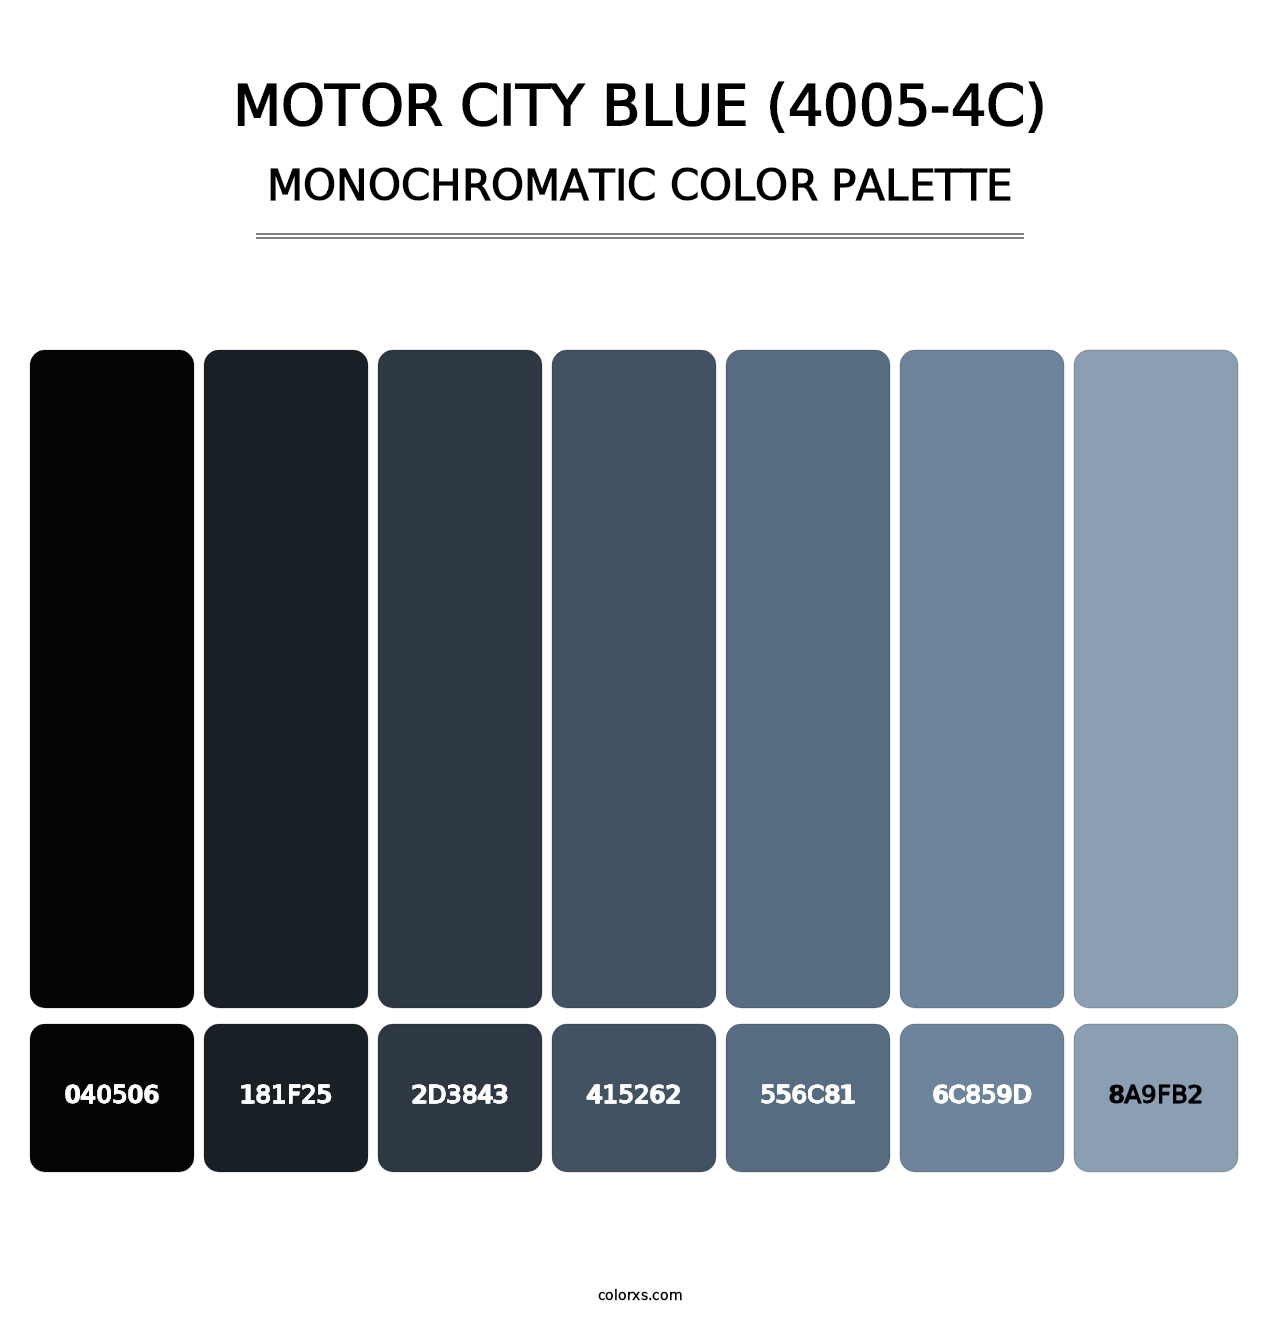 Motor City Blue (4005-4C) - Monochromatic Color Palette